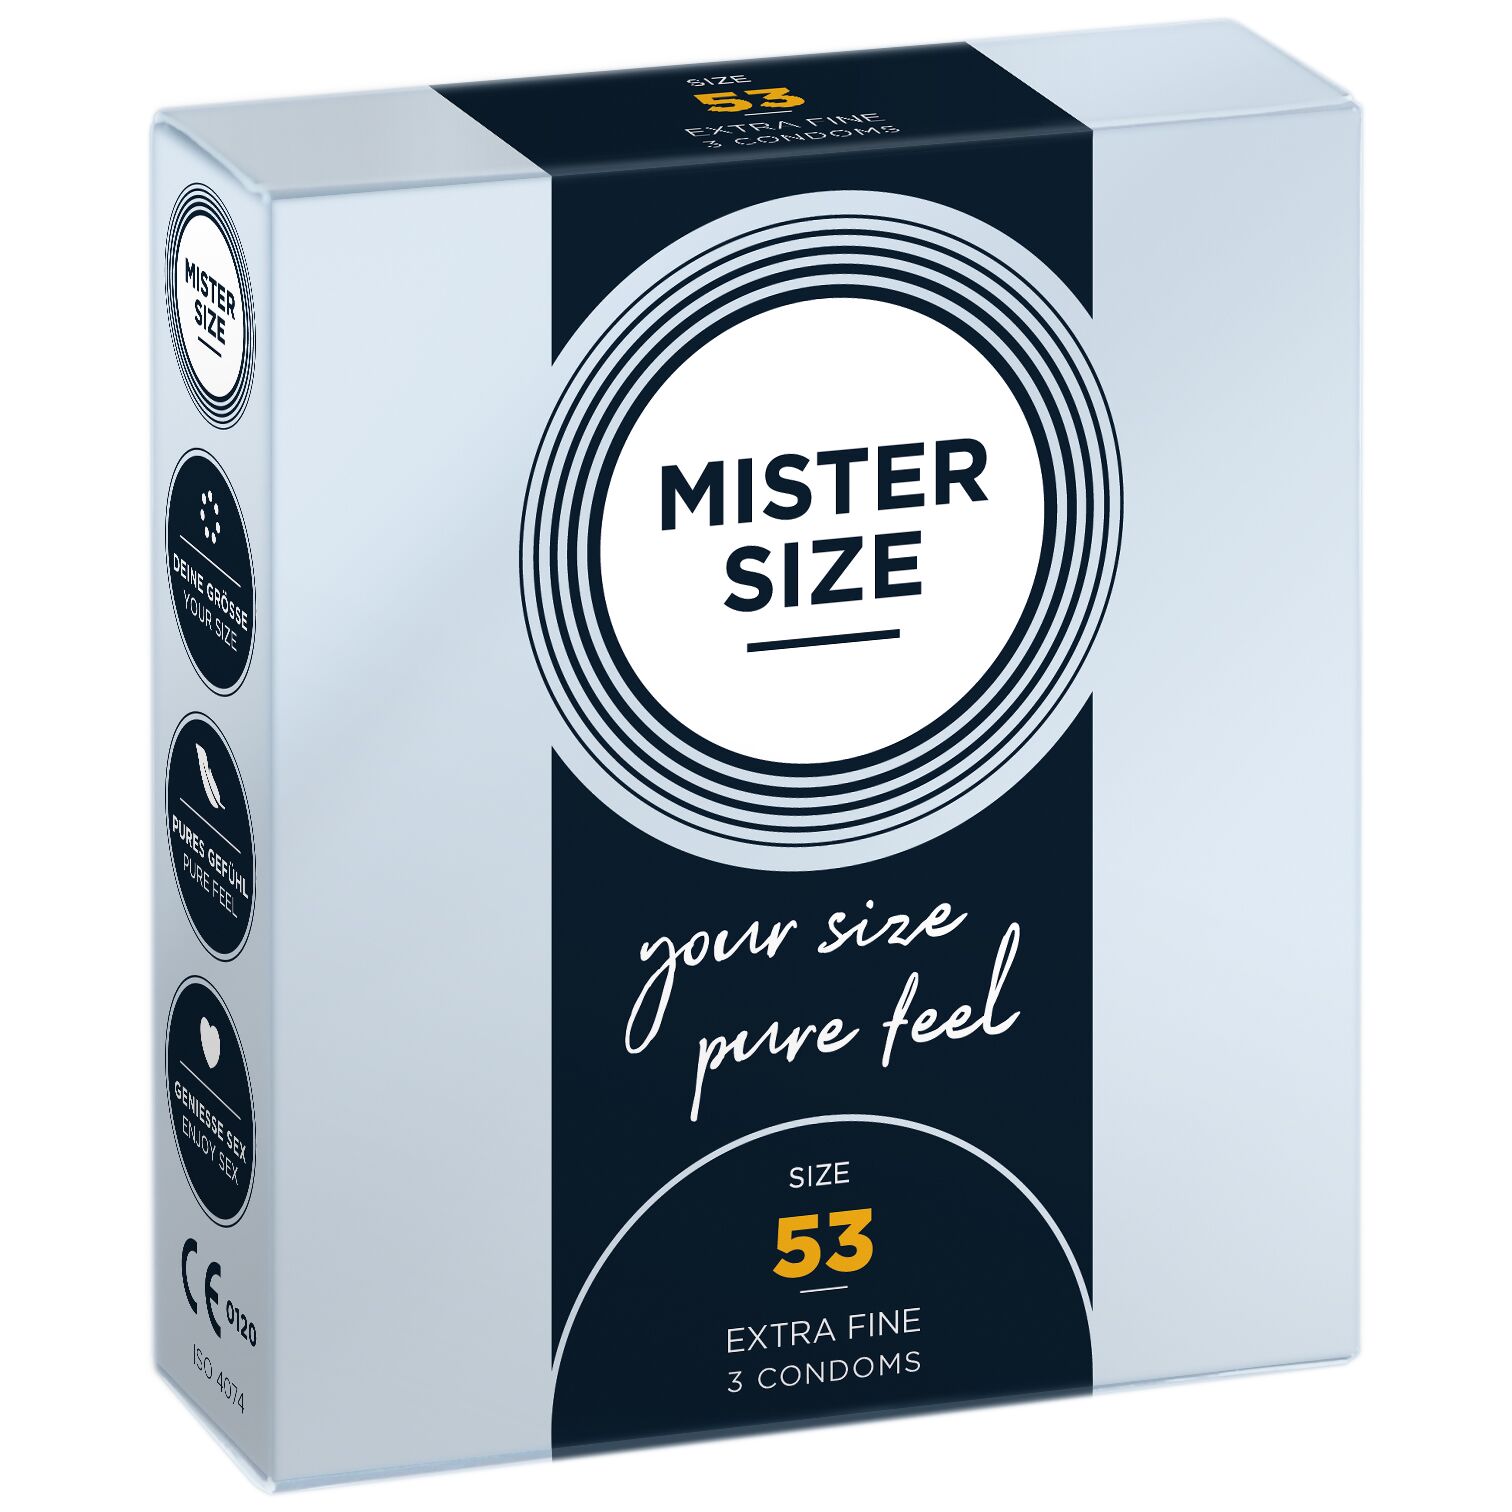 Пр�езервативи Mister Size - pure feel - 53 (3 condoms), товщина 0,05 мм